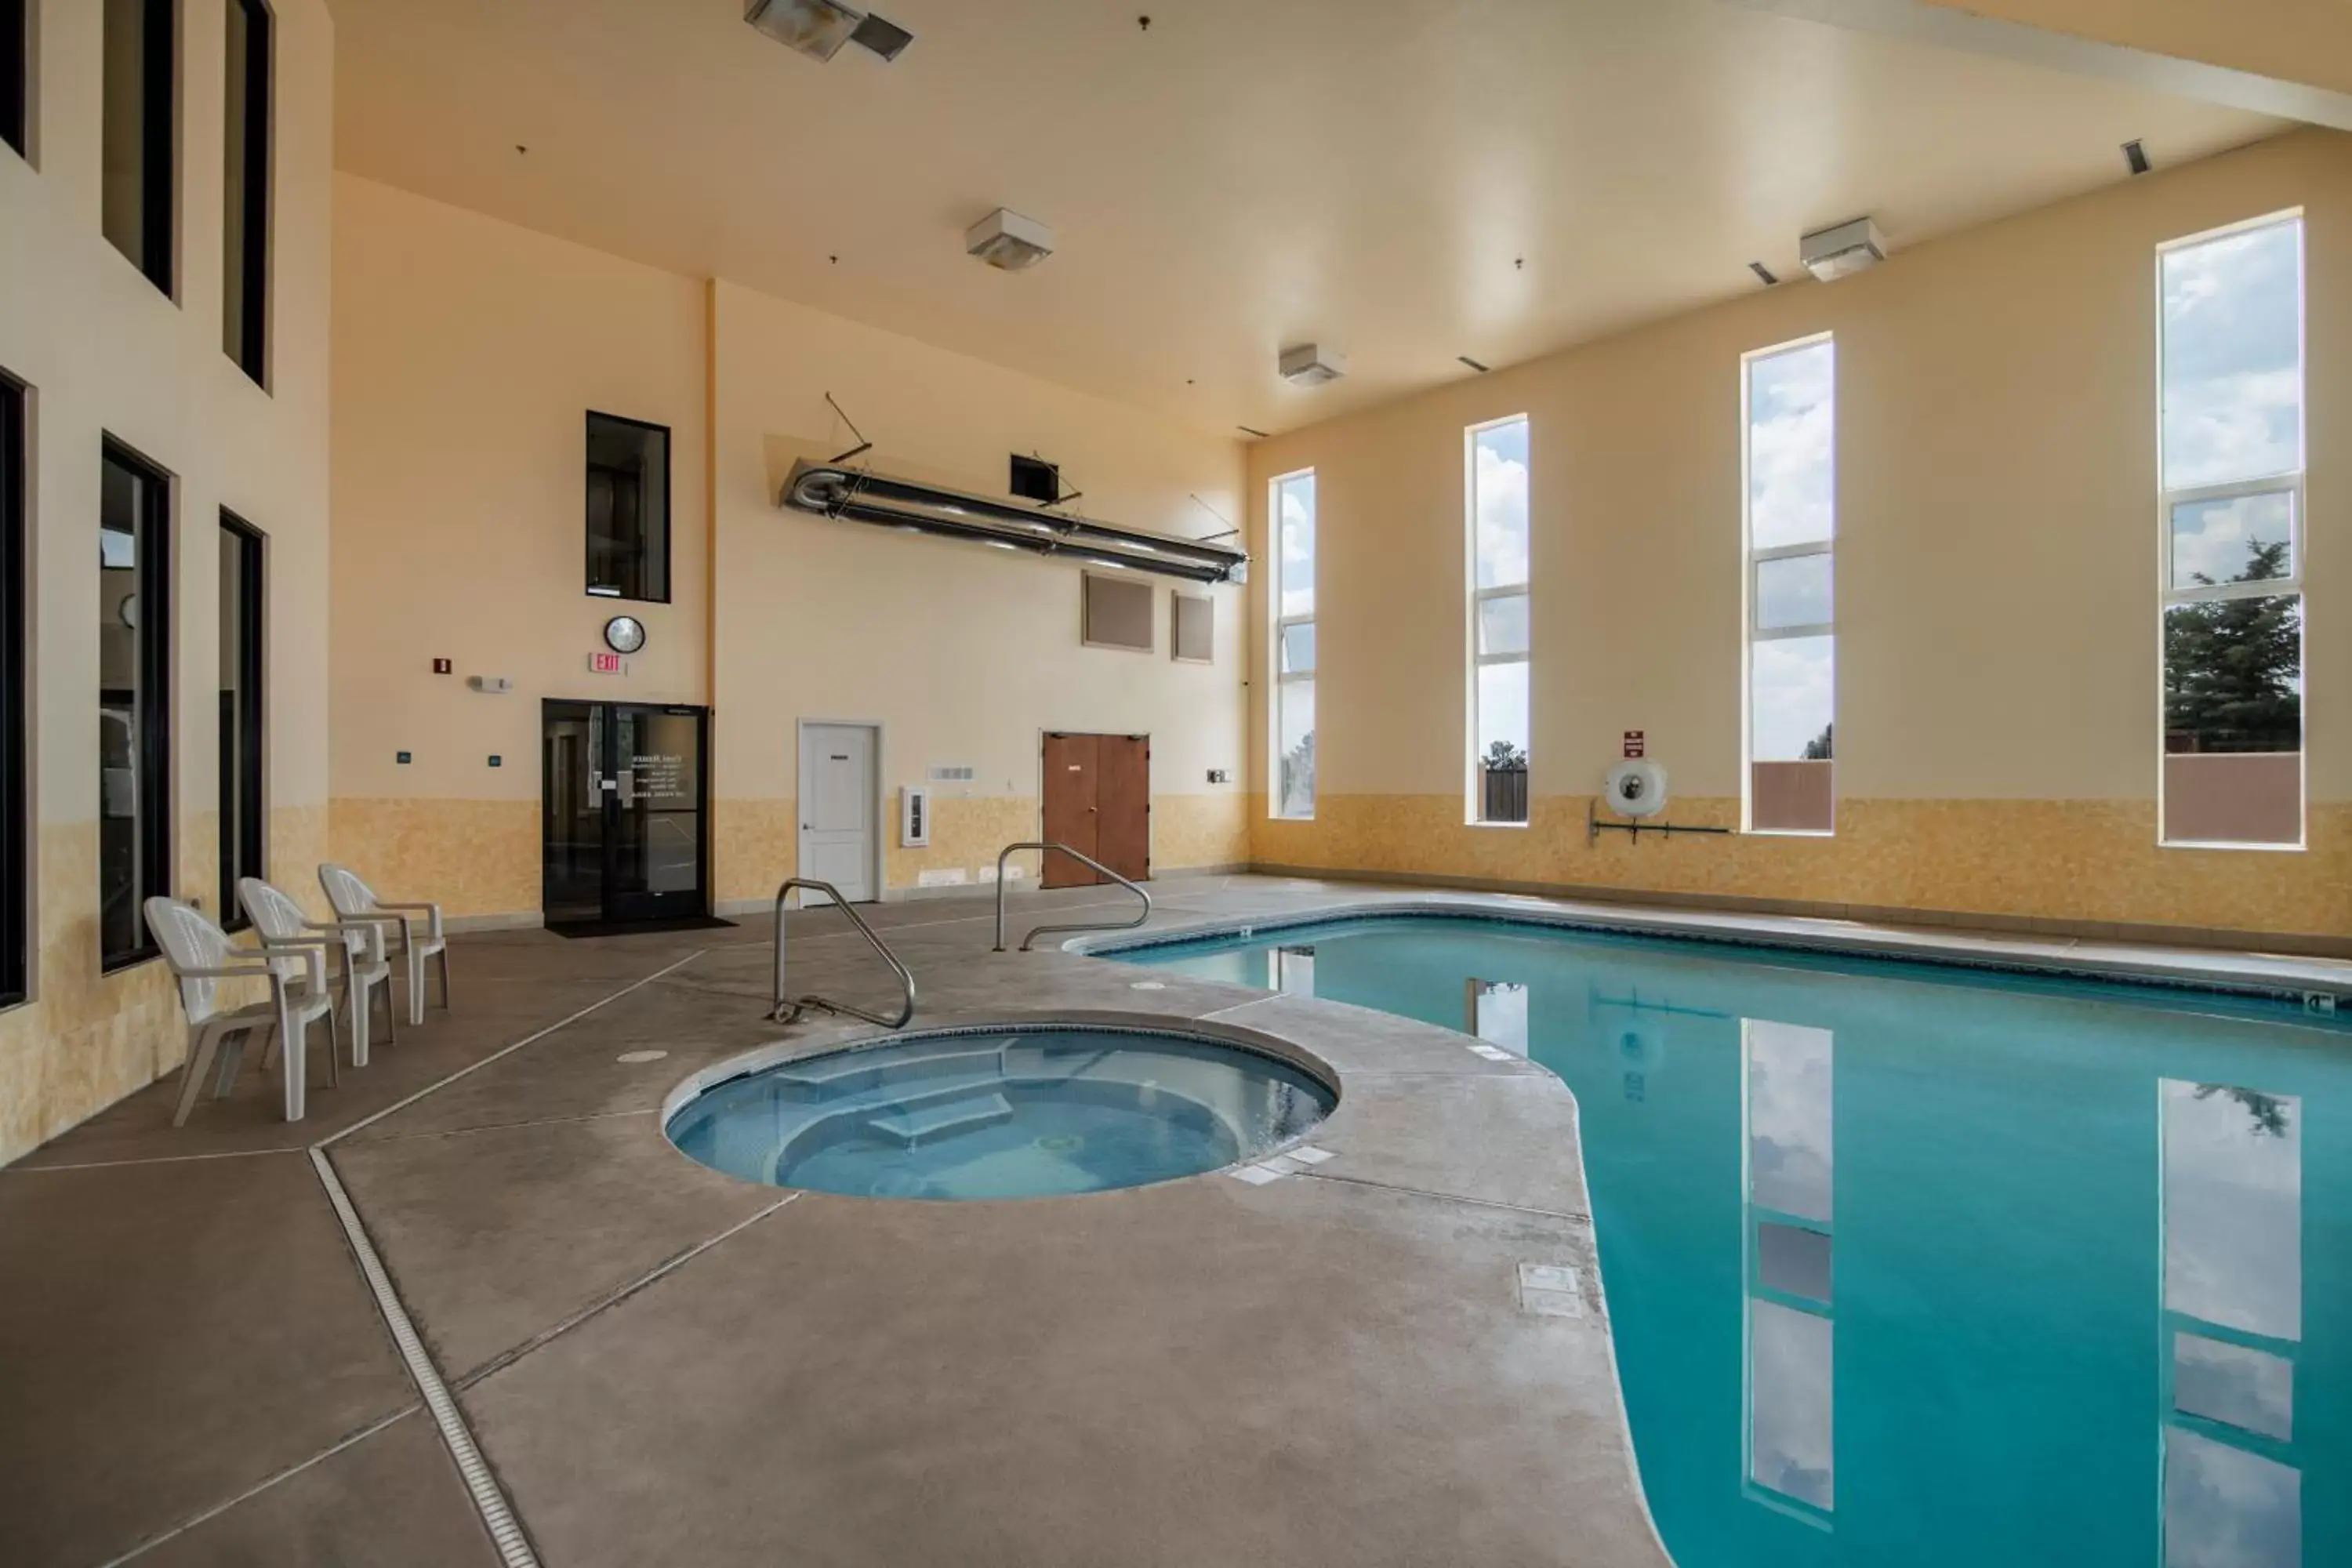 Hot Tub, Swimming Pool in Hillside Inn Pagosa